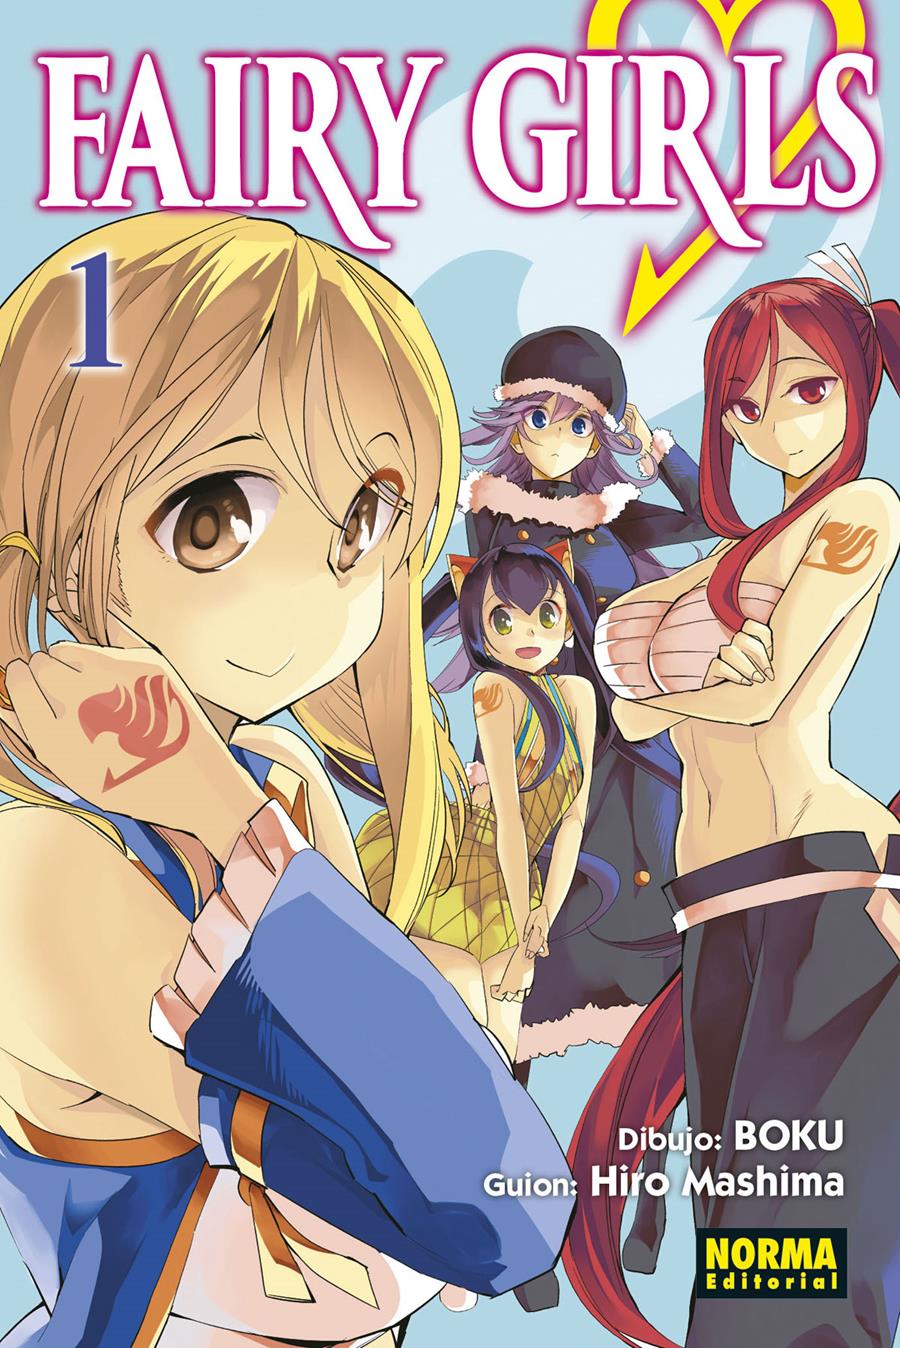 Fairy Girls 01 | N1021-NOR02 | Hiro Mashima, Boku | Terra de Còmic - Tu tienda de cómics online especializada en cómics, manga y merchandising